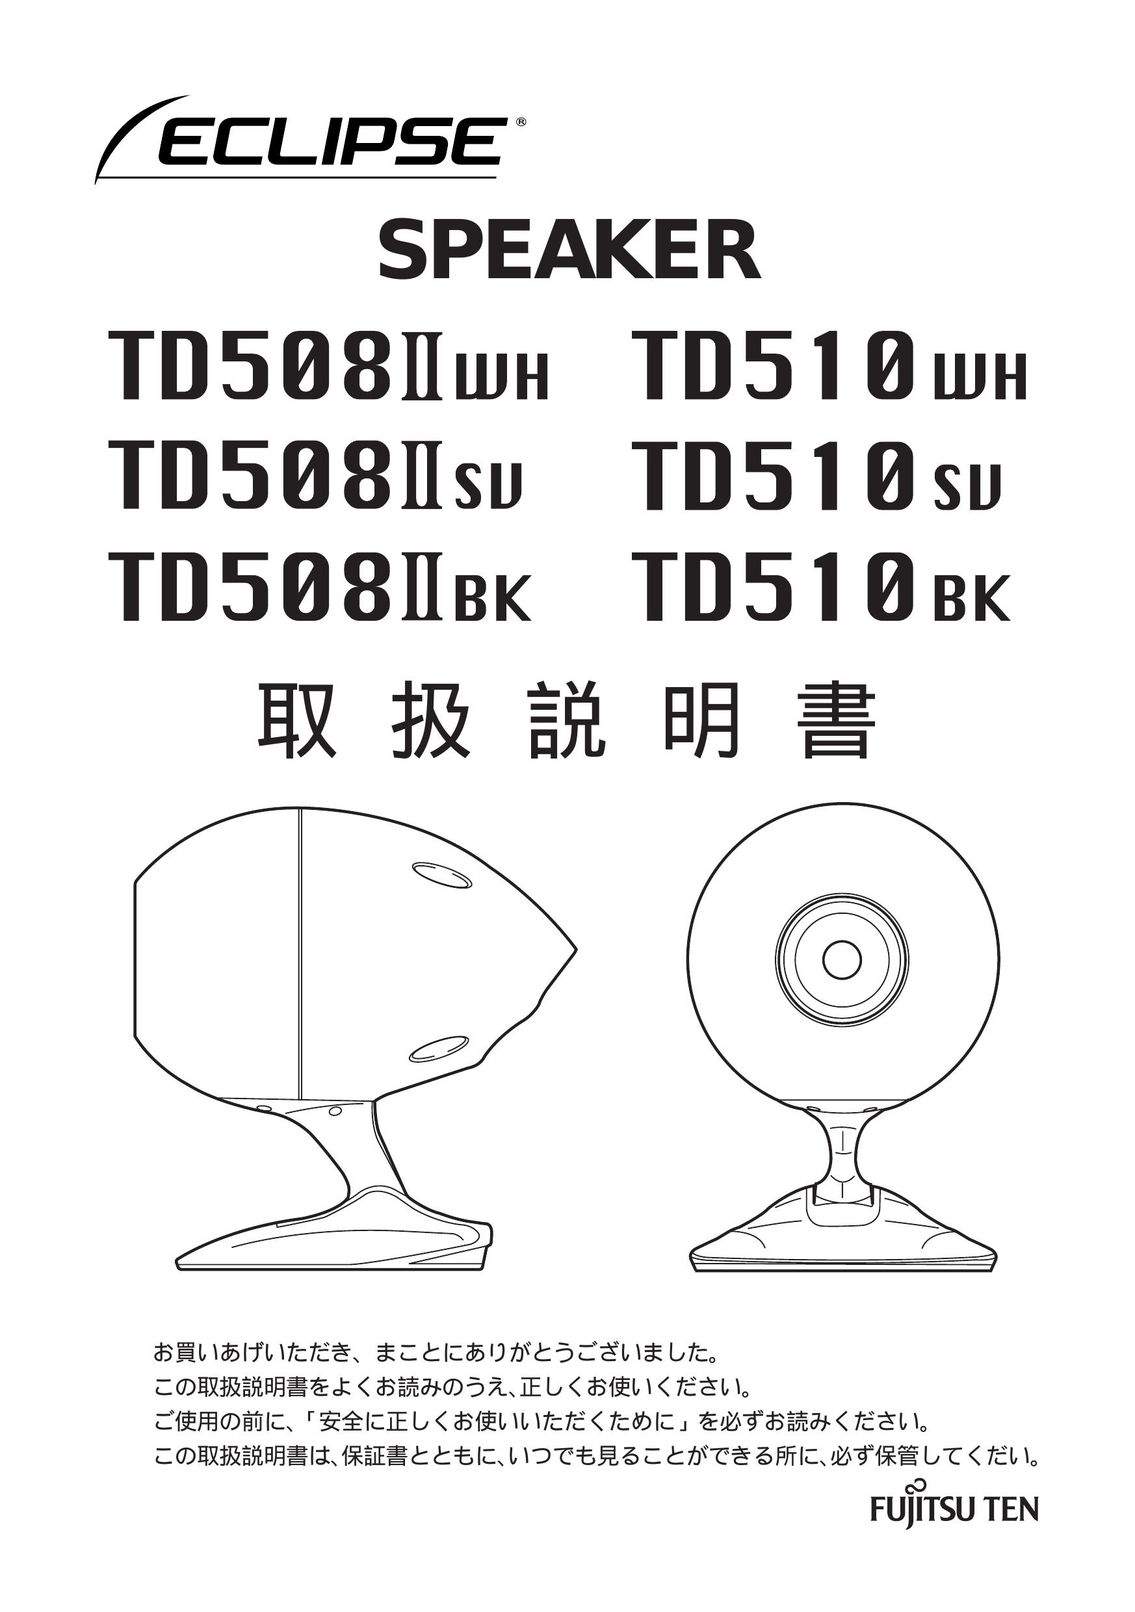 Eclipse - Fujitsu Ten TD510 WH Car Speaker User Manual